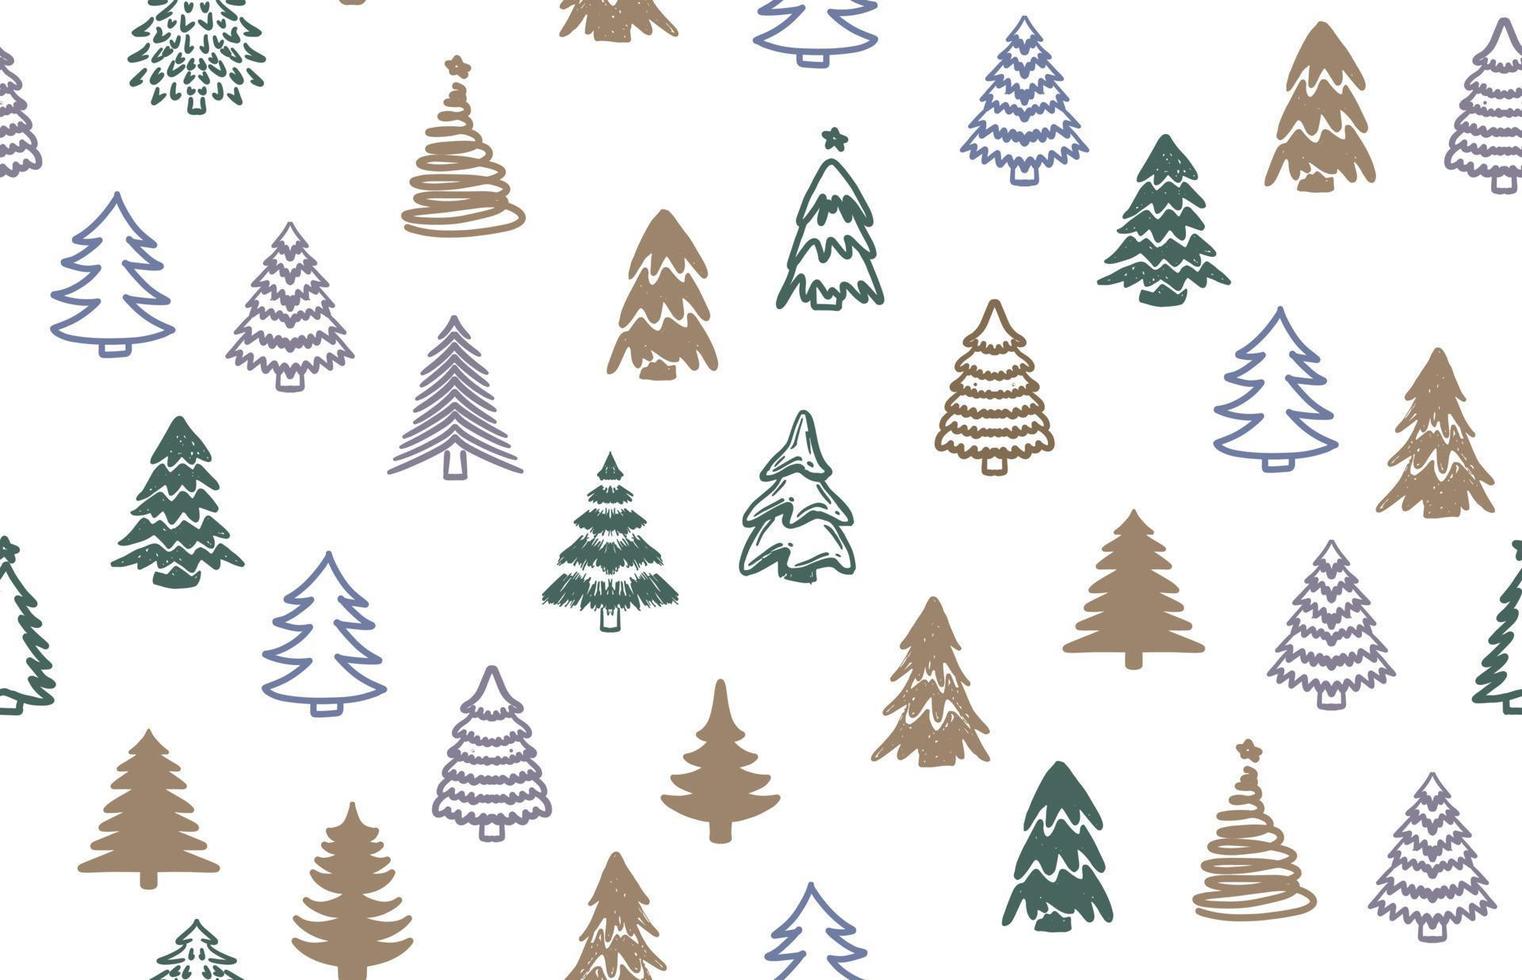 juego de árboles de navidad, ilustraciones dibujadas a mano vector